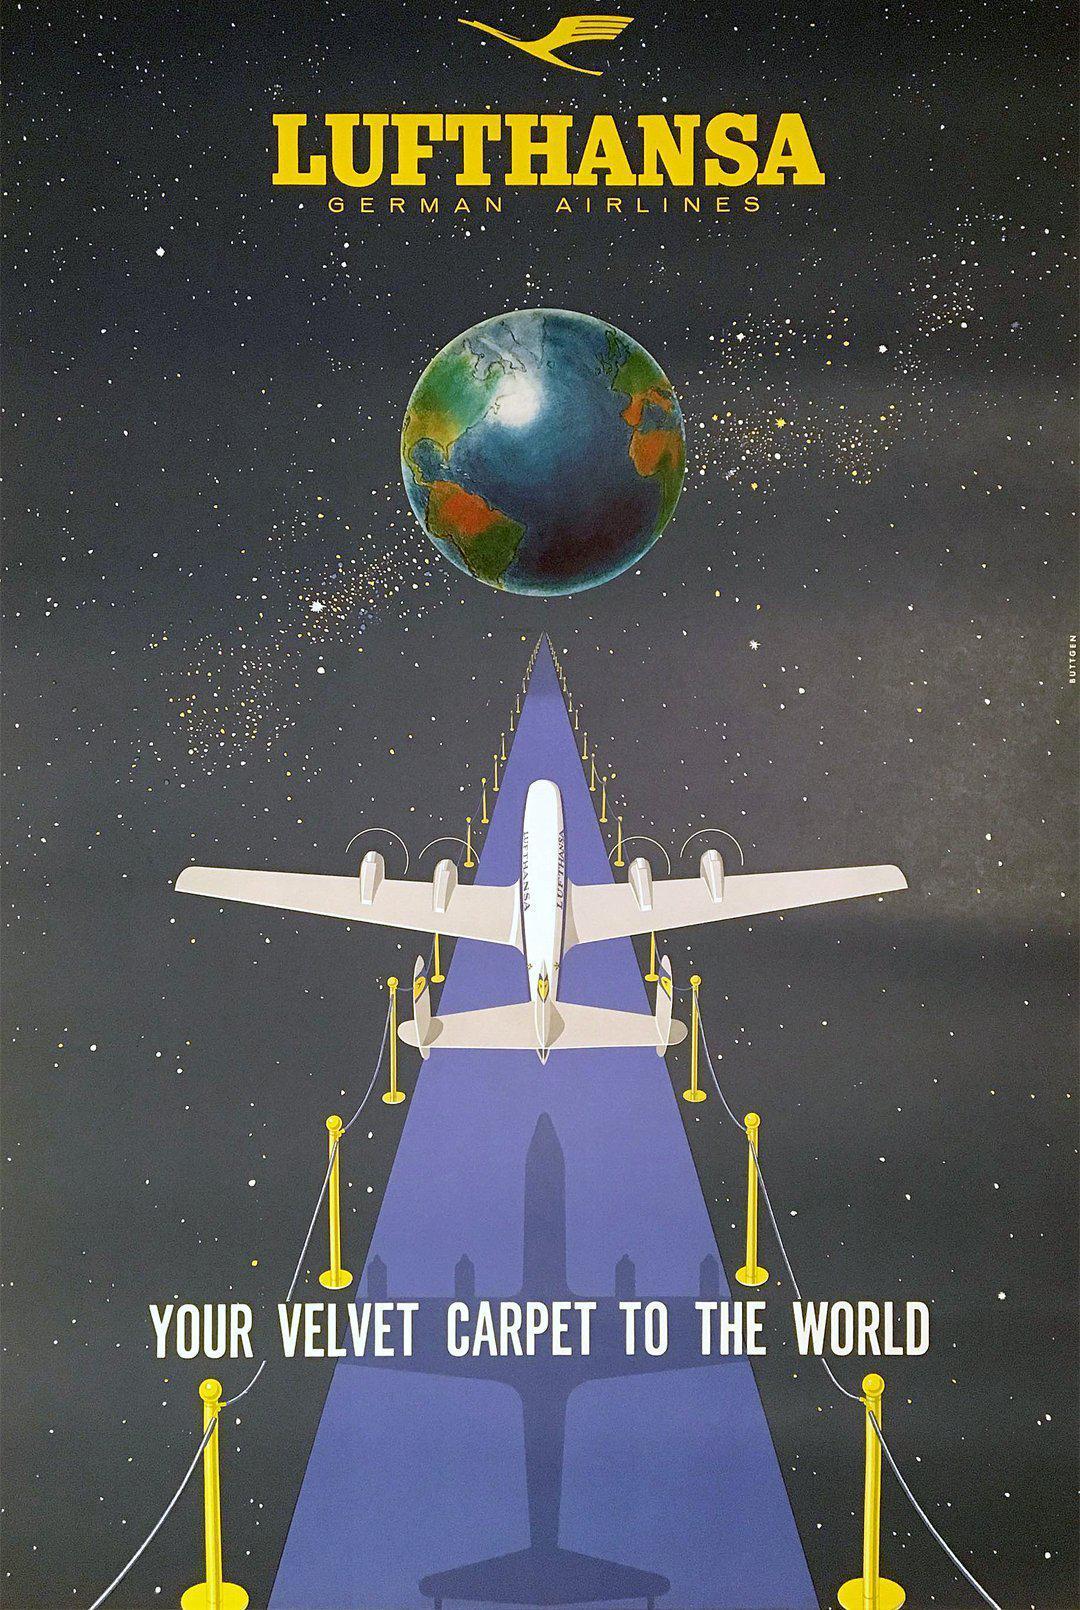 Original Vintage Lufthansa - Your Velvet Carpet to the World 1950's Travel Poster by Buttgen